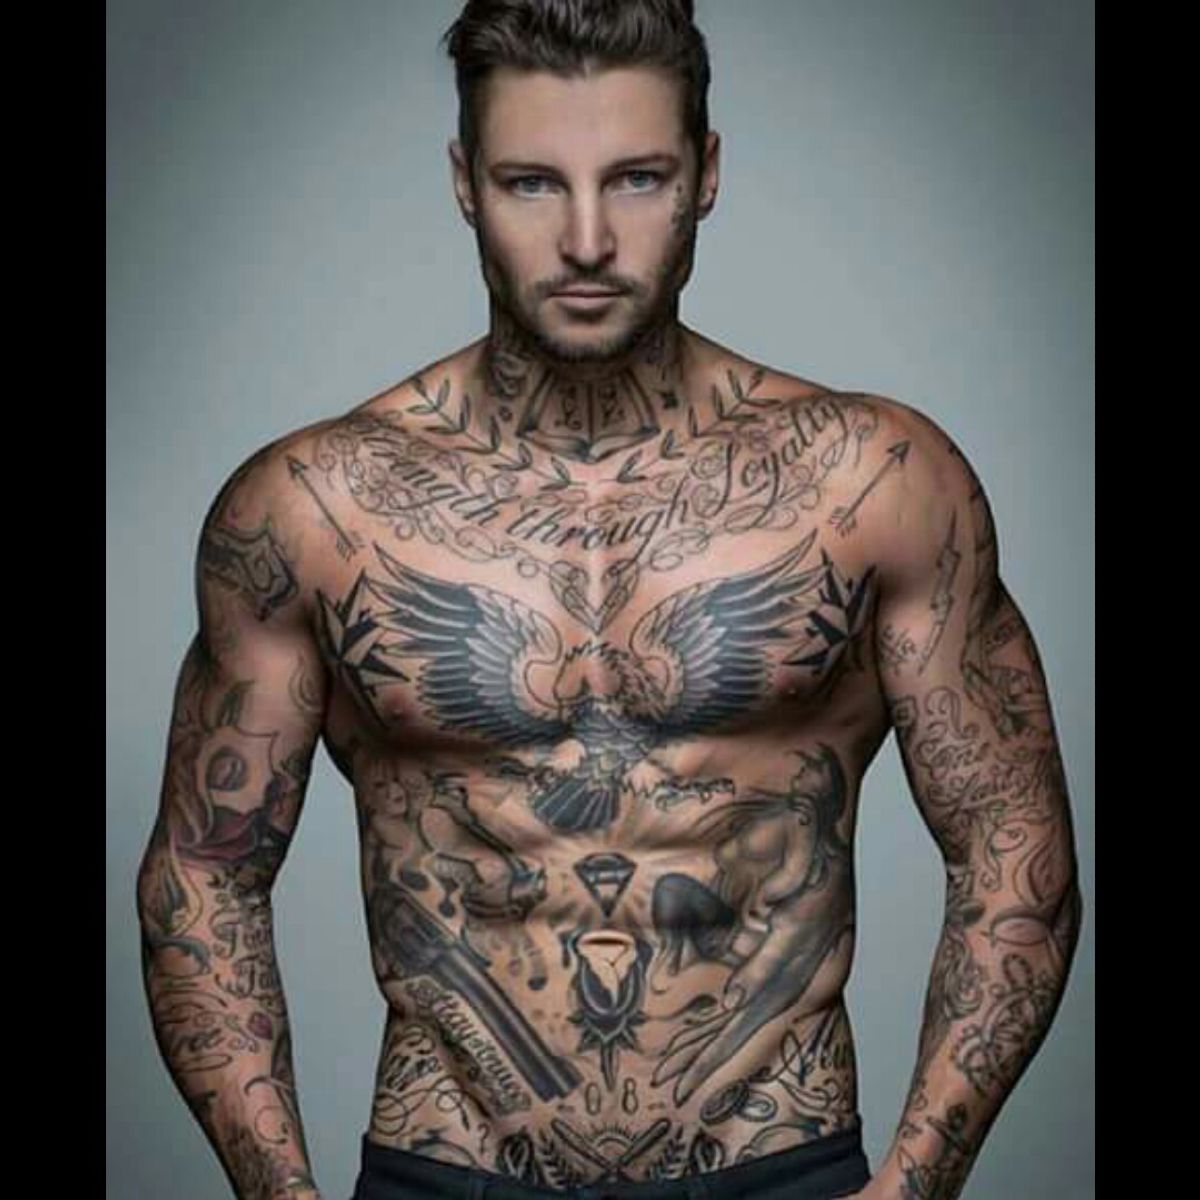 Tattoo uploaded by Marie-Claire • #Man #Men #Tattoos #Tatuajes